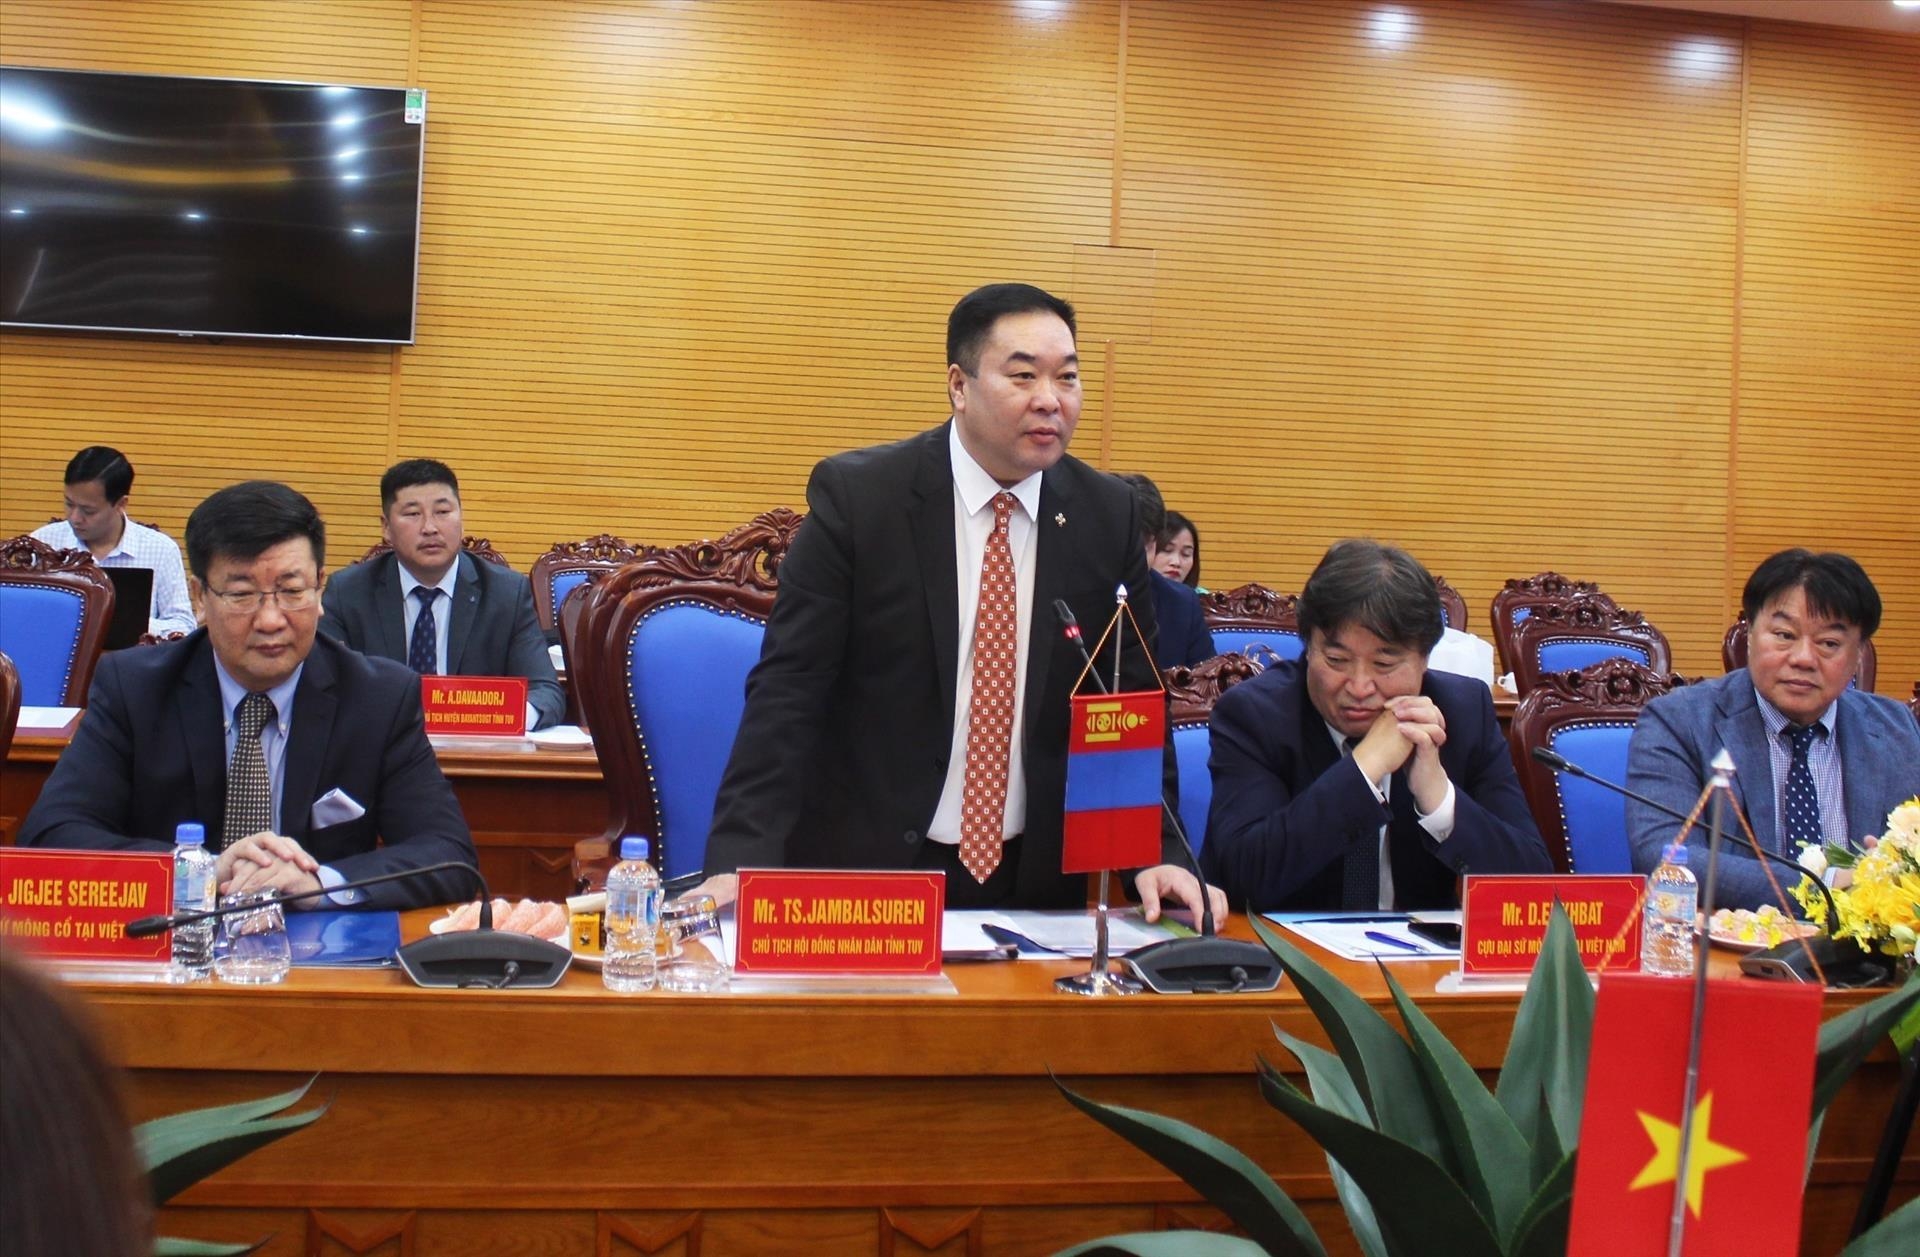 蒙古国中央省议会议长Ts.Jambalsuren发表讲话。图自越通社